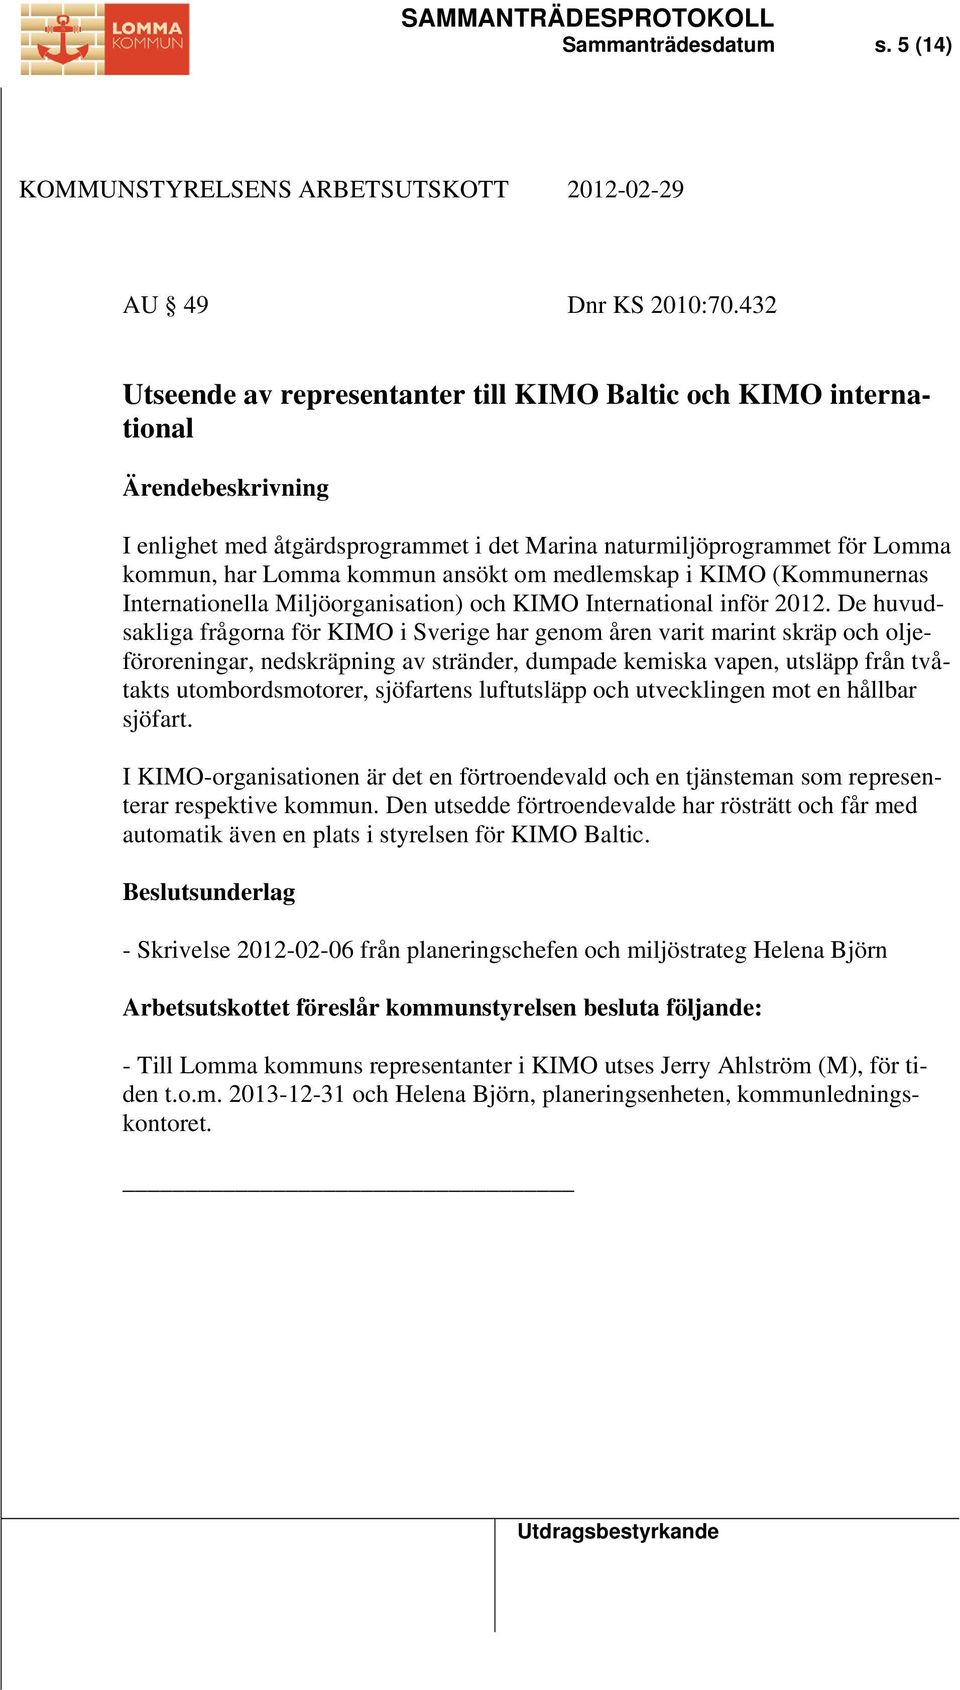 KIMO (Kommunernas Internationella Miljöorganisation) och KIMO International inför 2012.